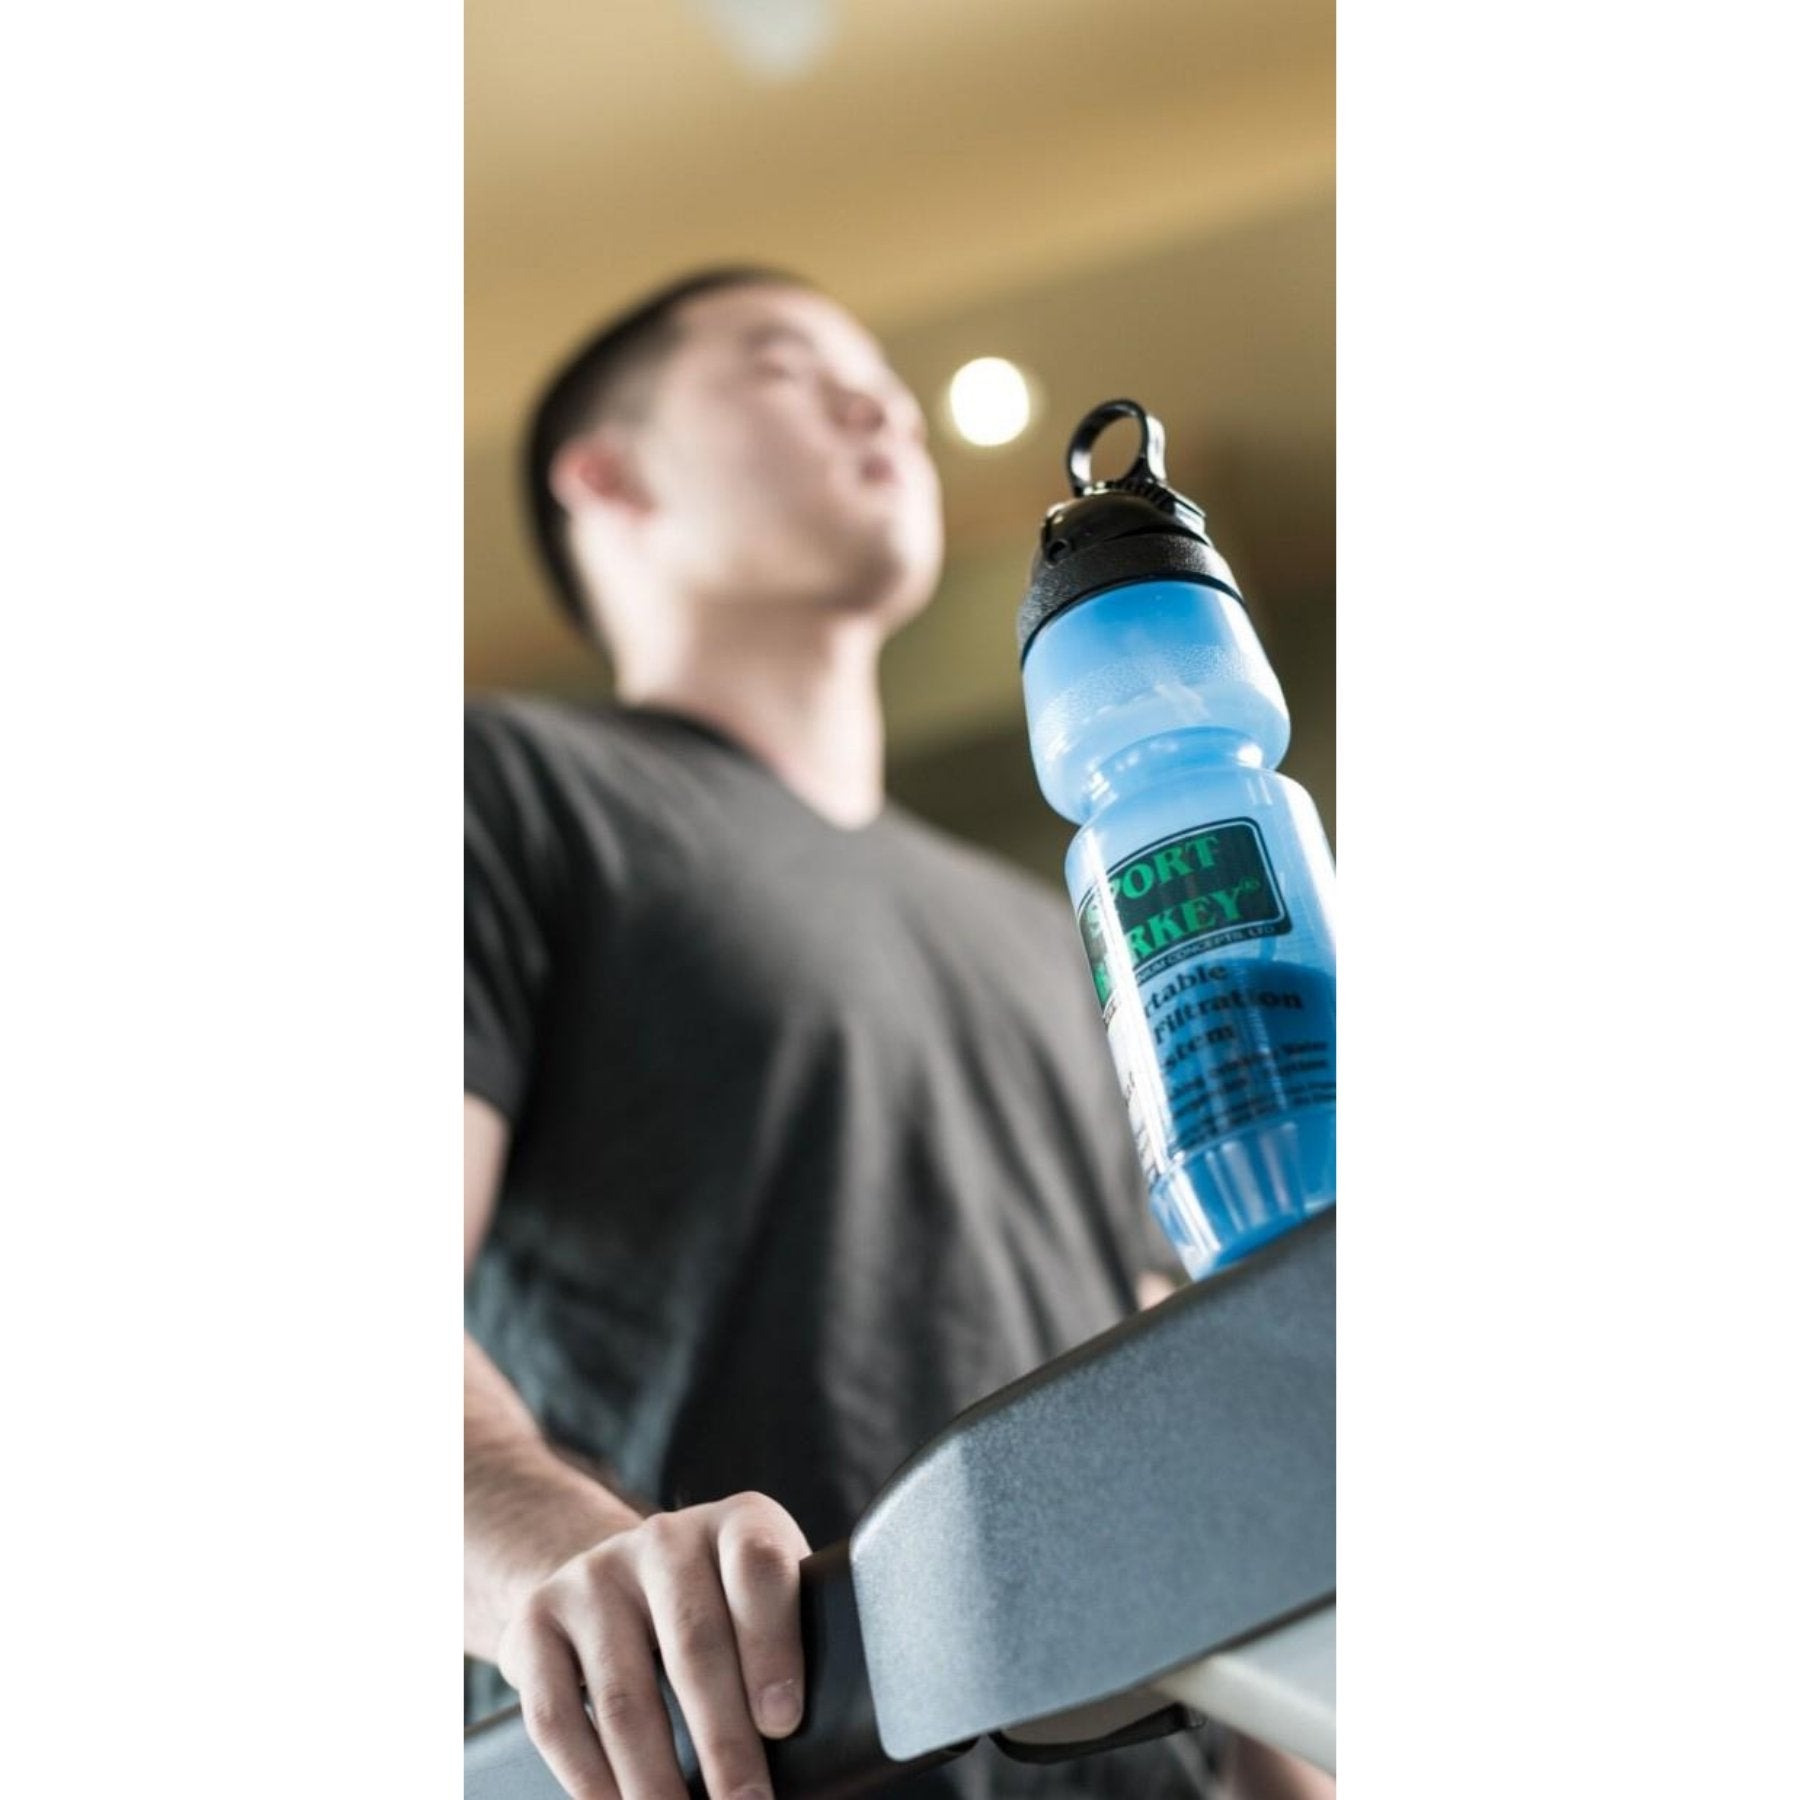 Berkey Water Bottle - Sport Berkey Bottle Water Filter (22 oz) - Quality Water Treatment